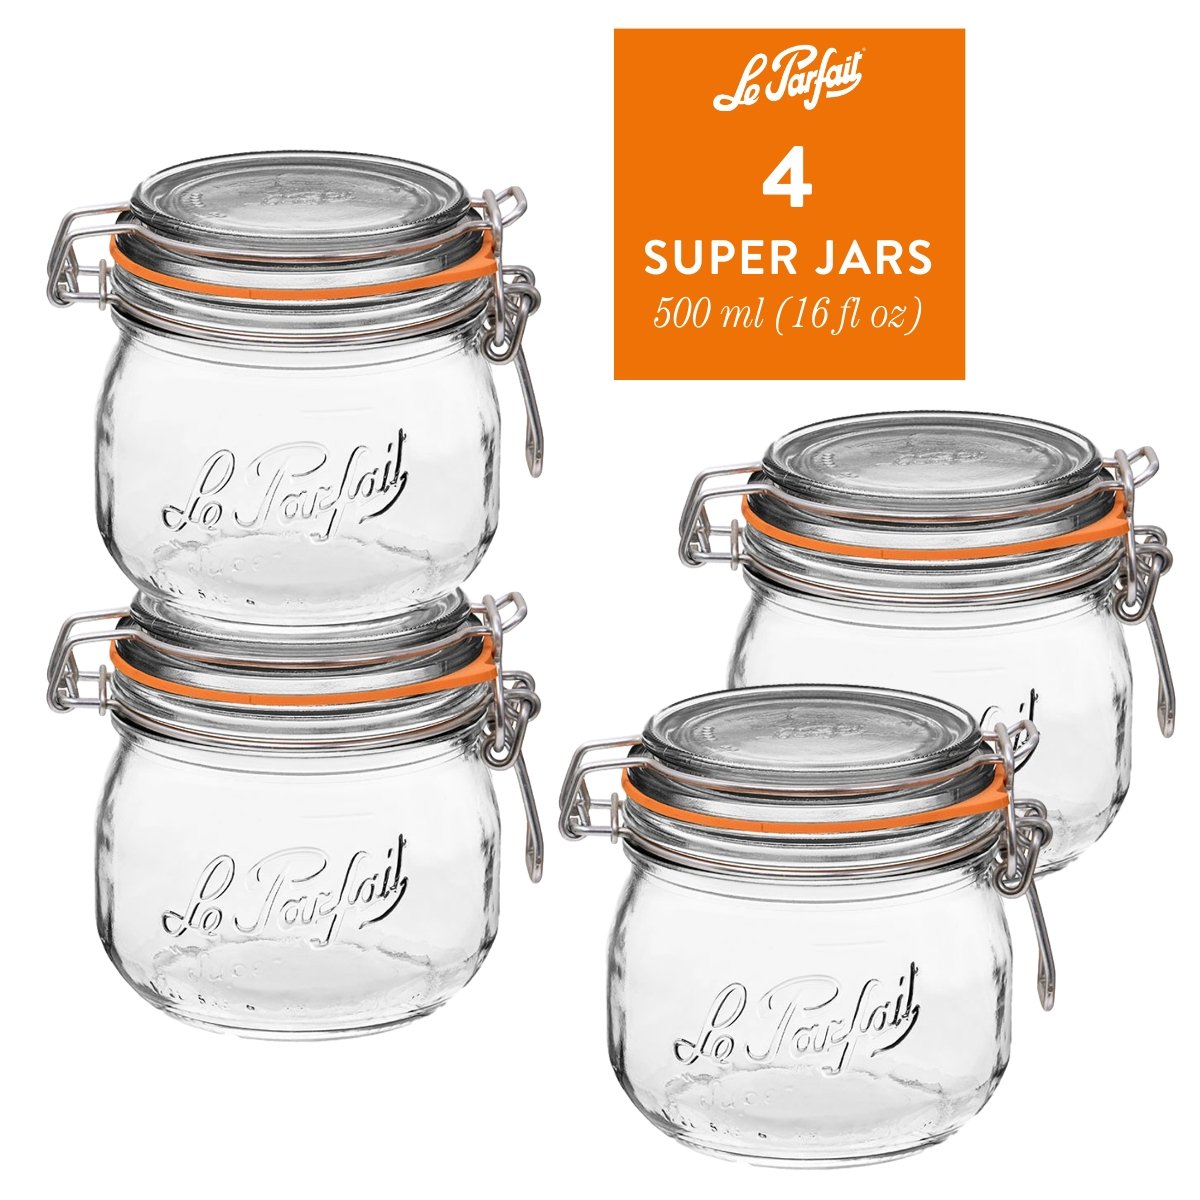 Le Parfait Super Jars 250ml (8oz) / 4